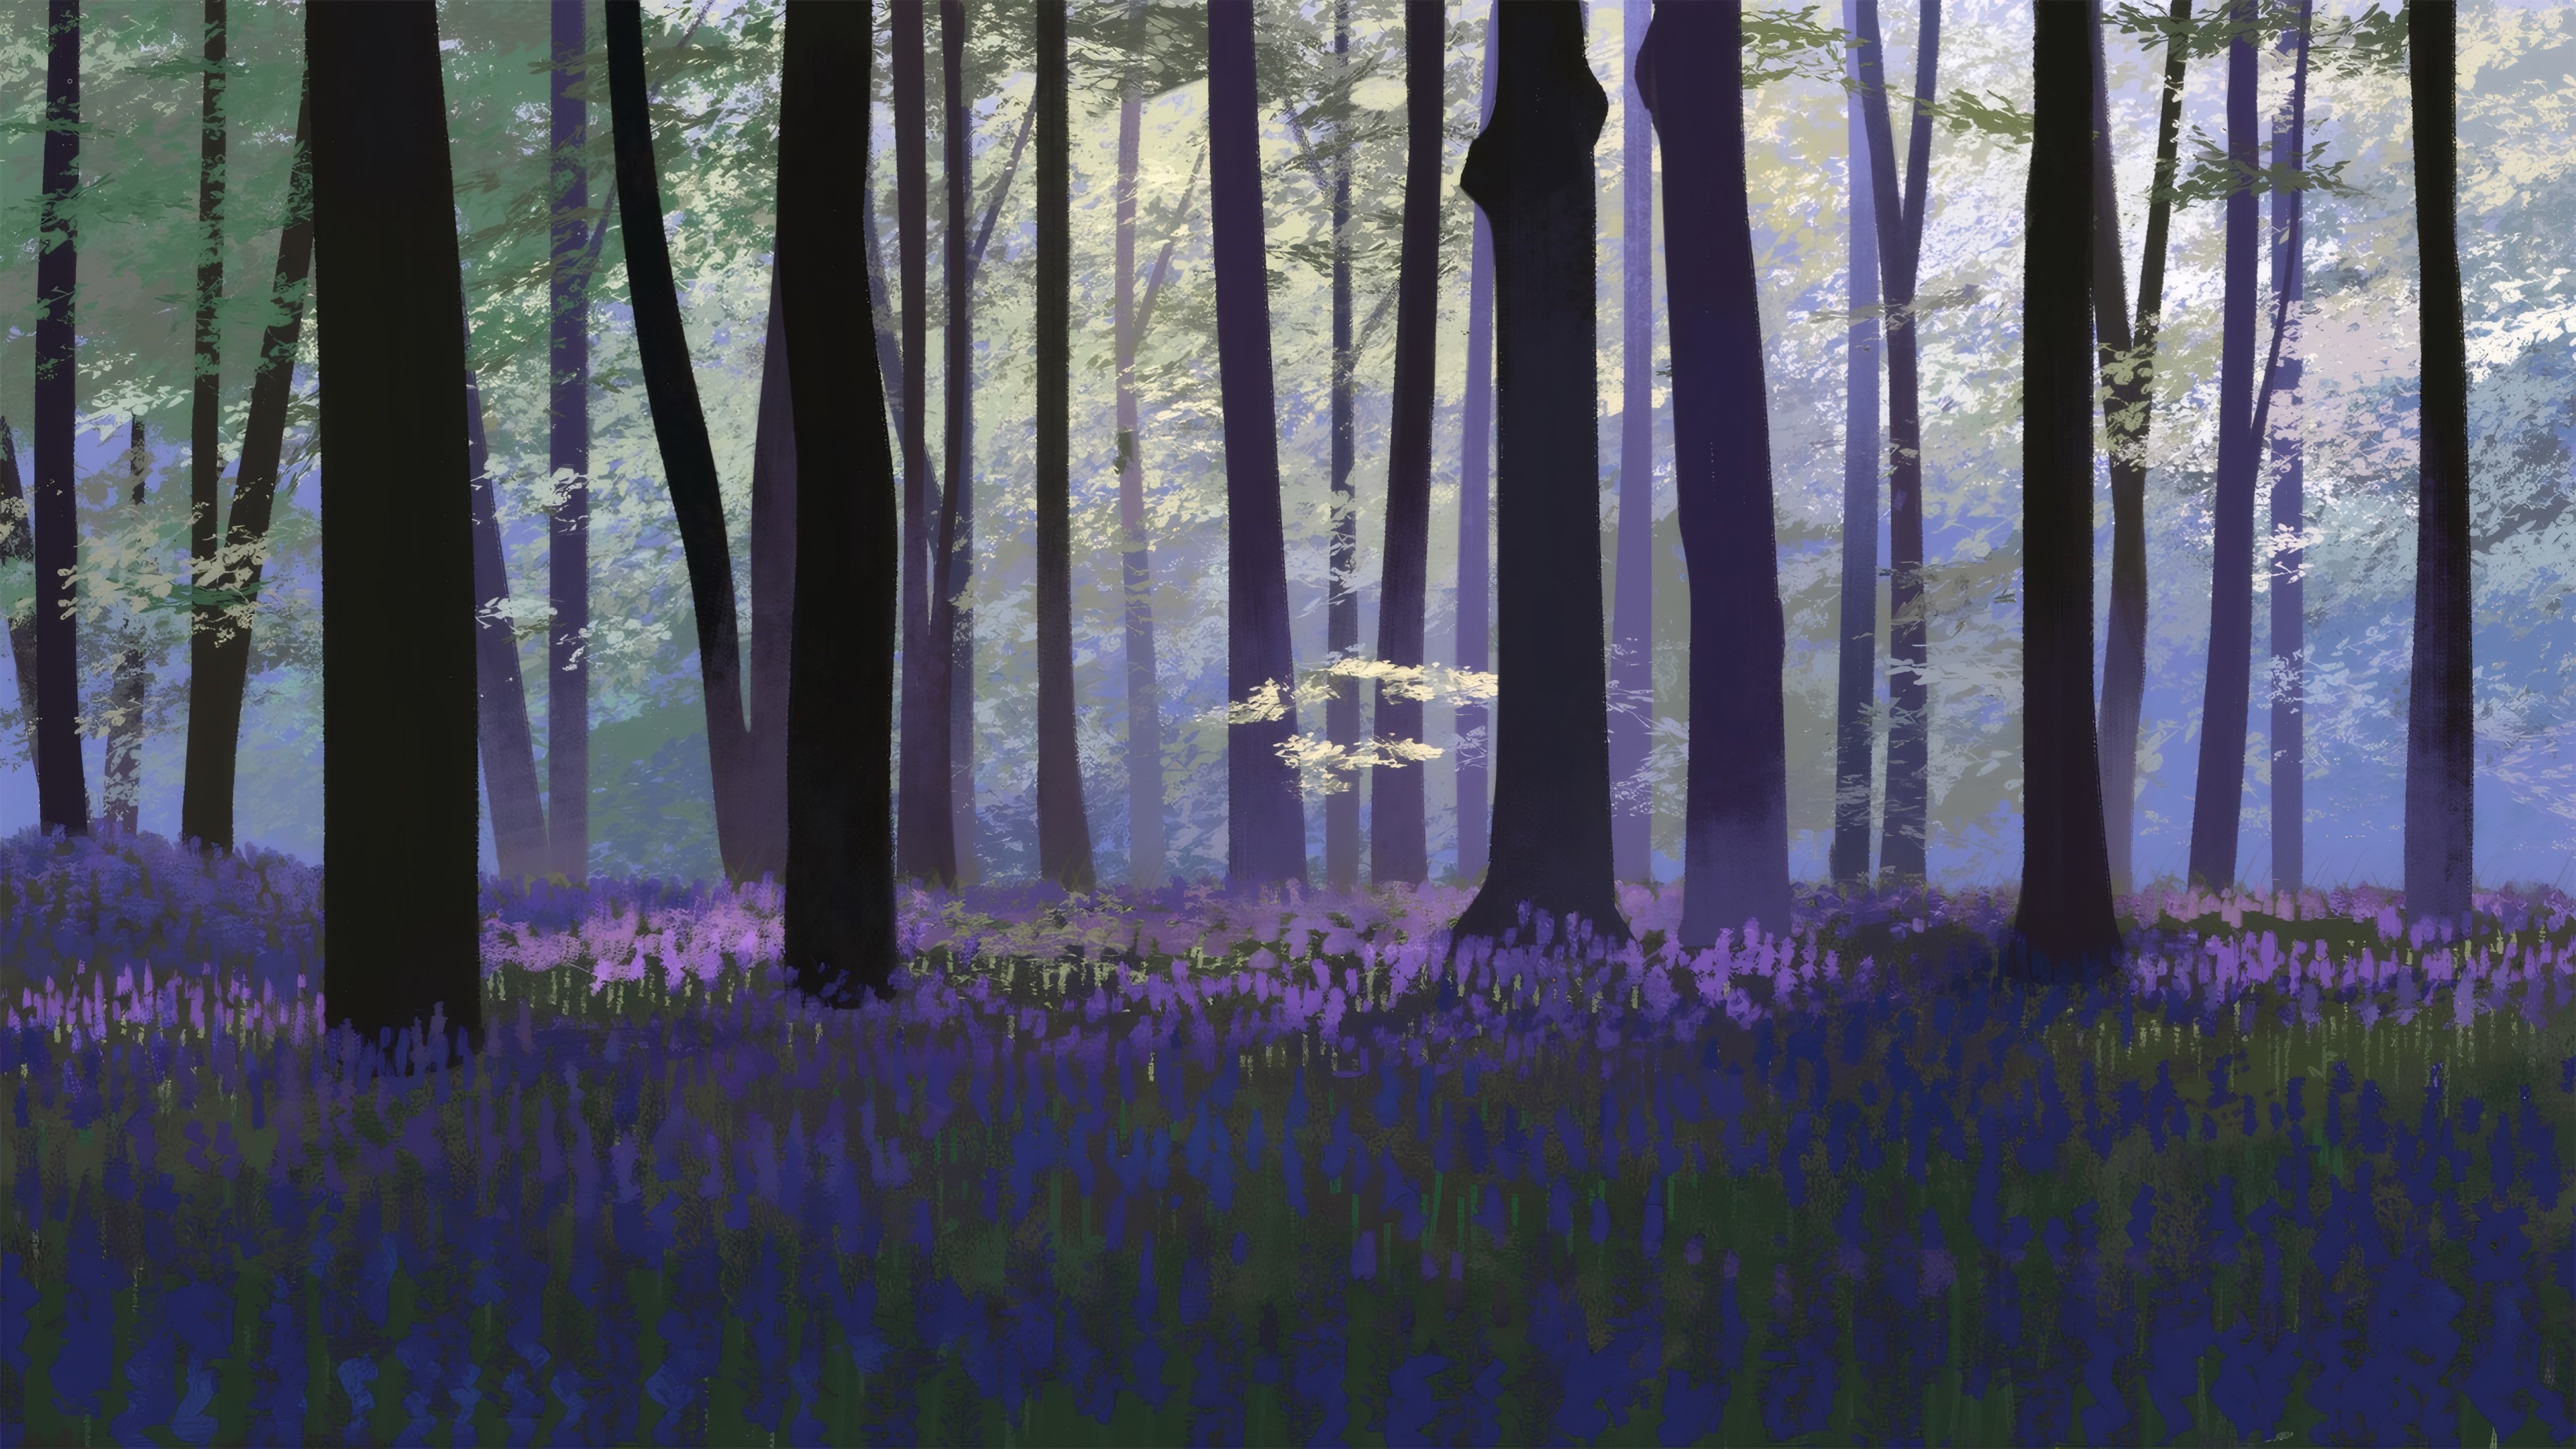 General 3840x2160 Pontea digital art artwork forest lavender